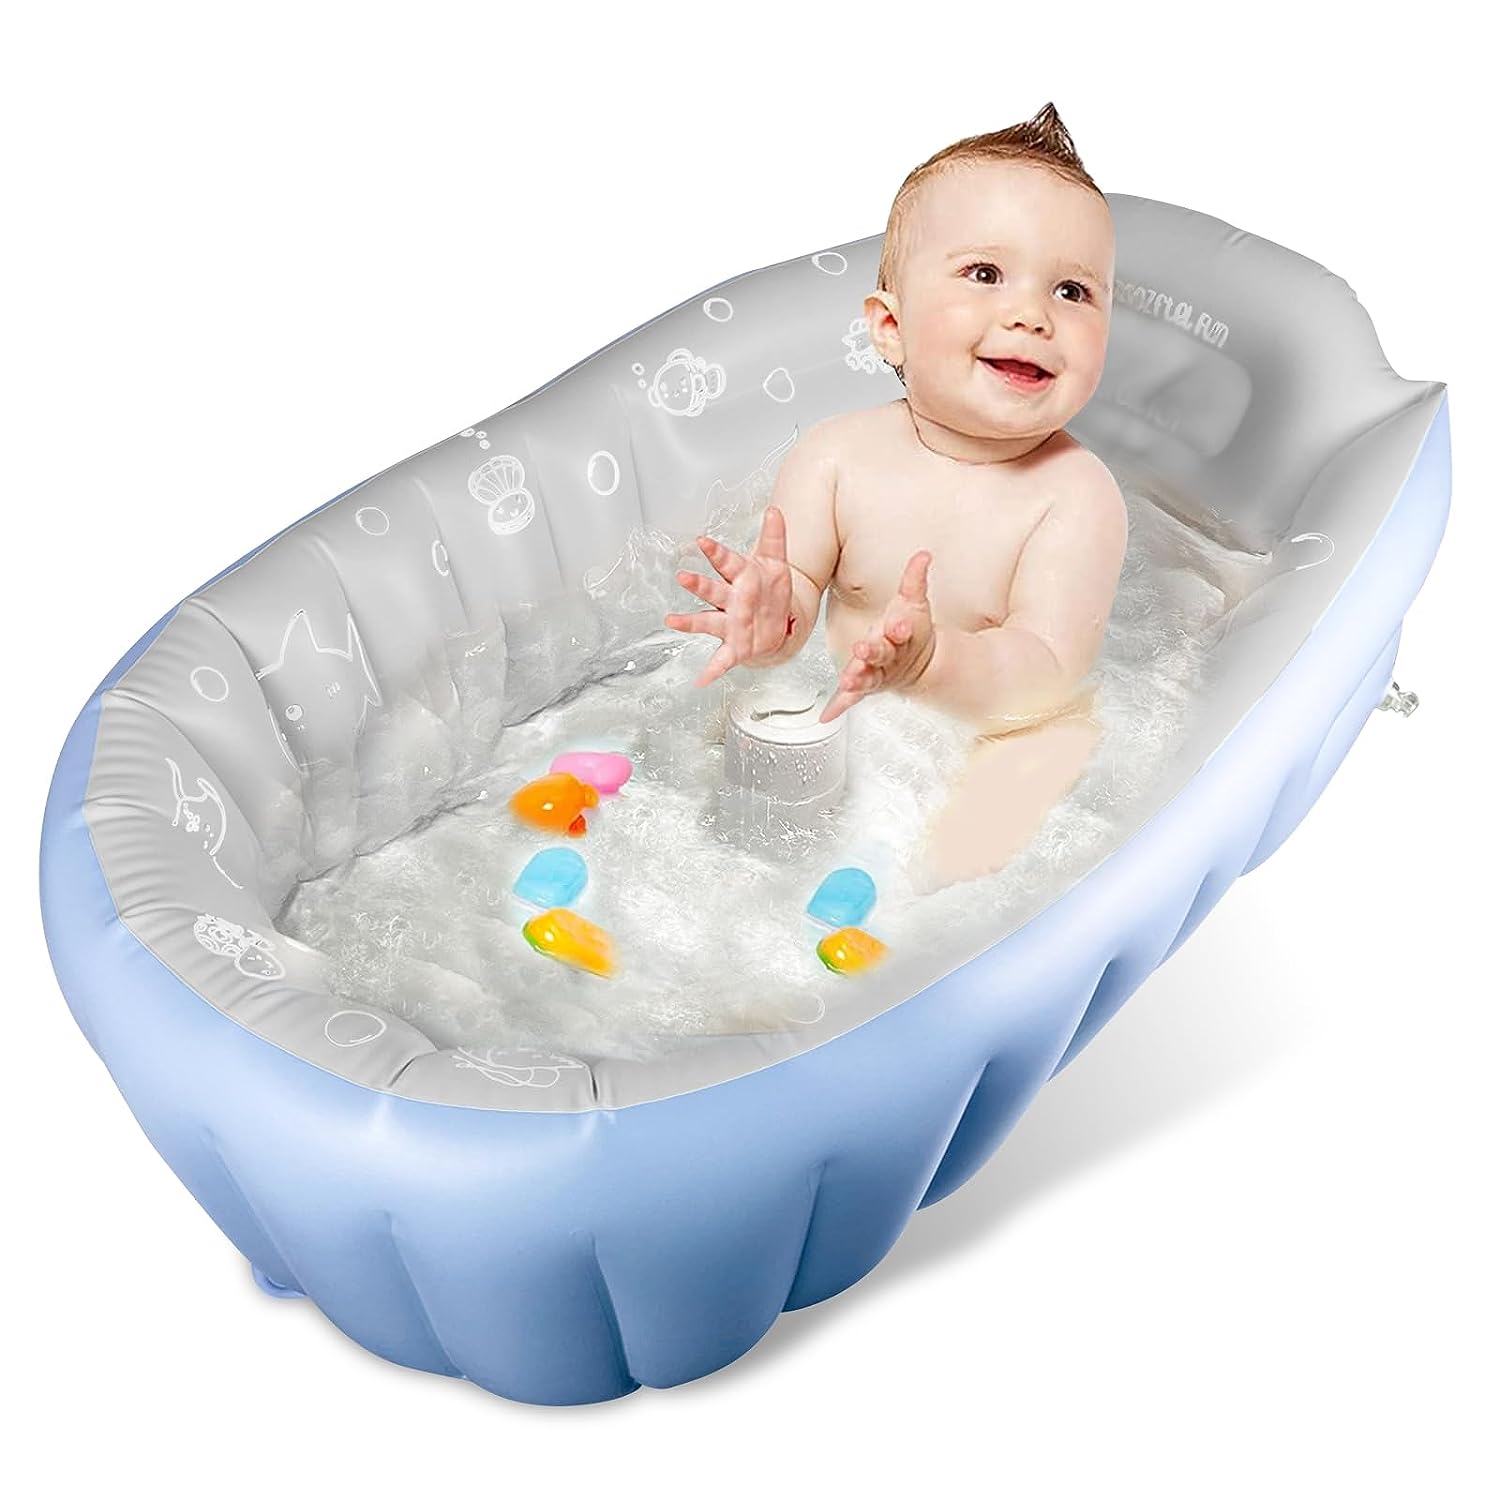 Rlozftel Baby Bath Tub, Inflatable Baby Bathtub with [...]